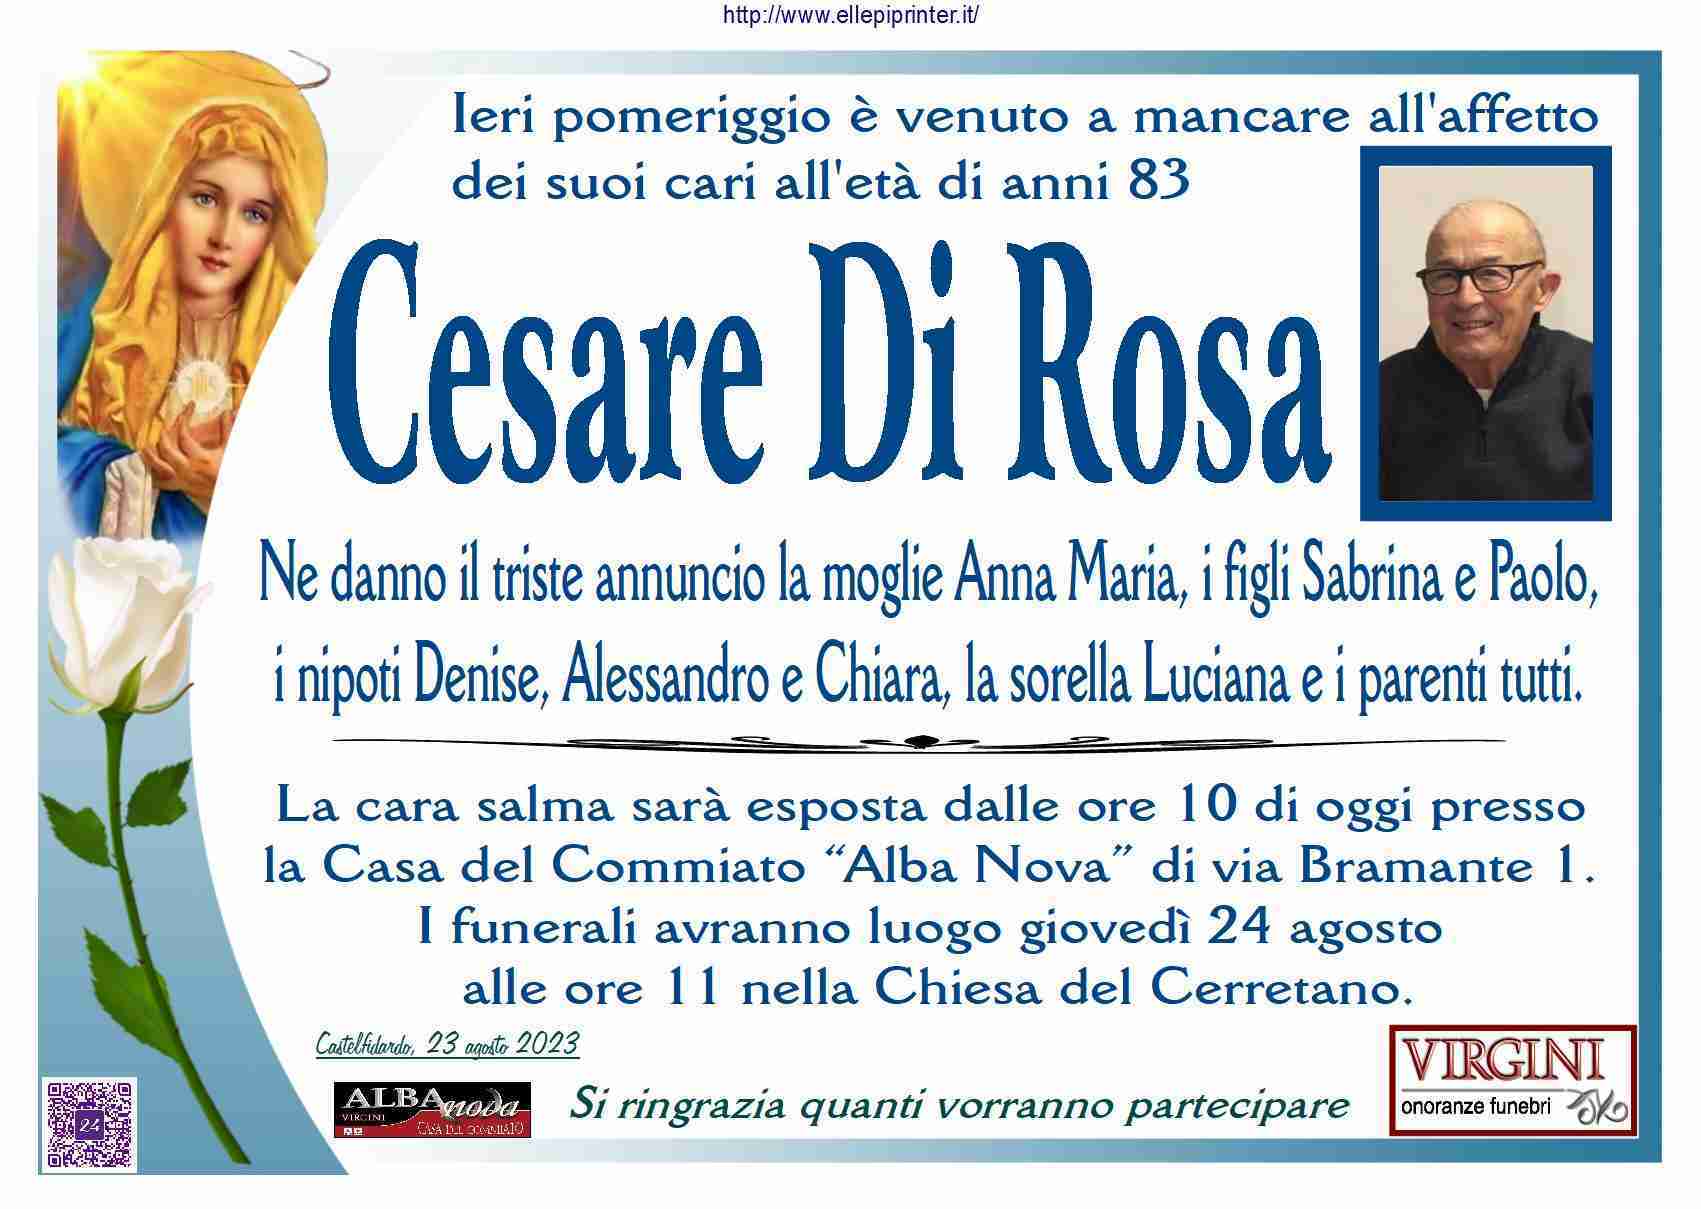 Cesare Di Rosa